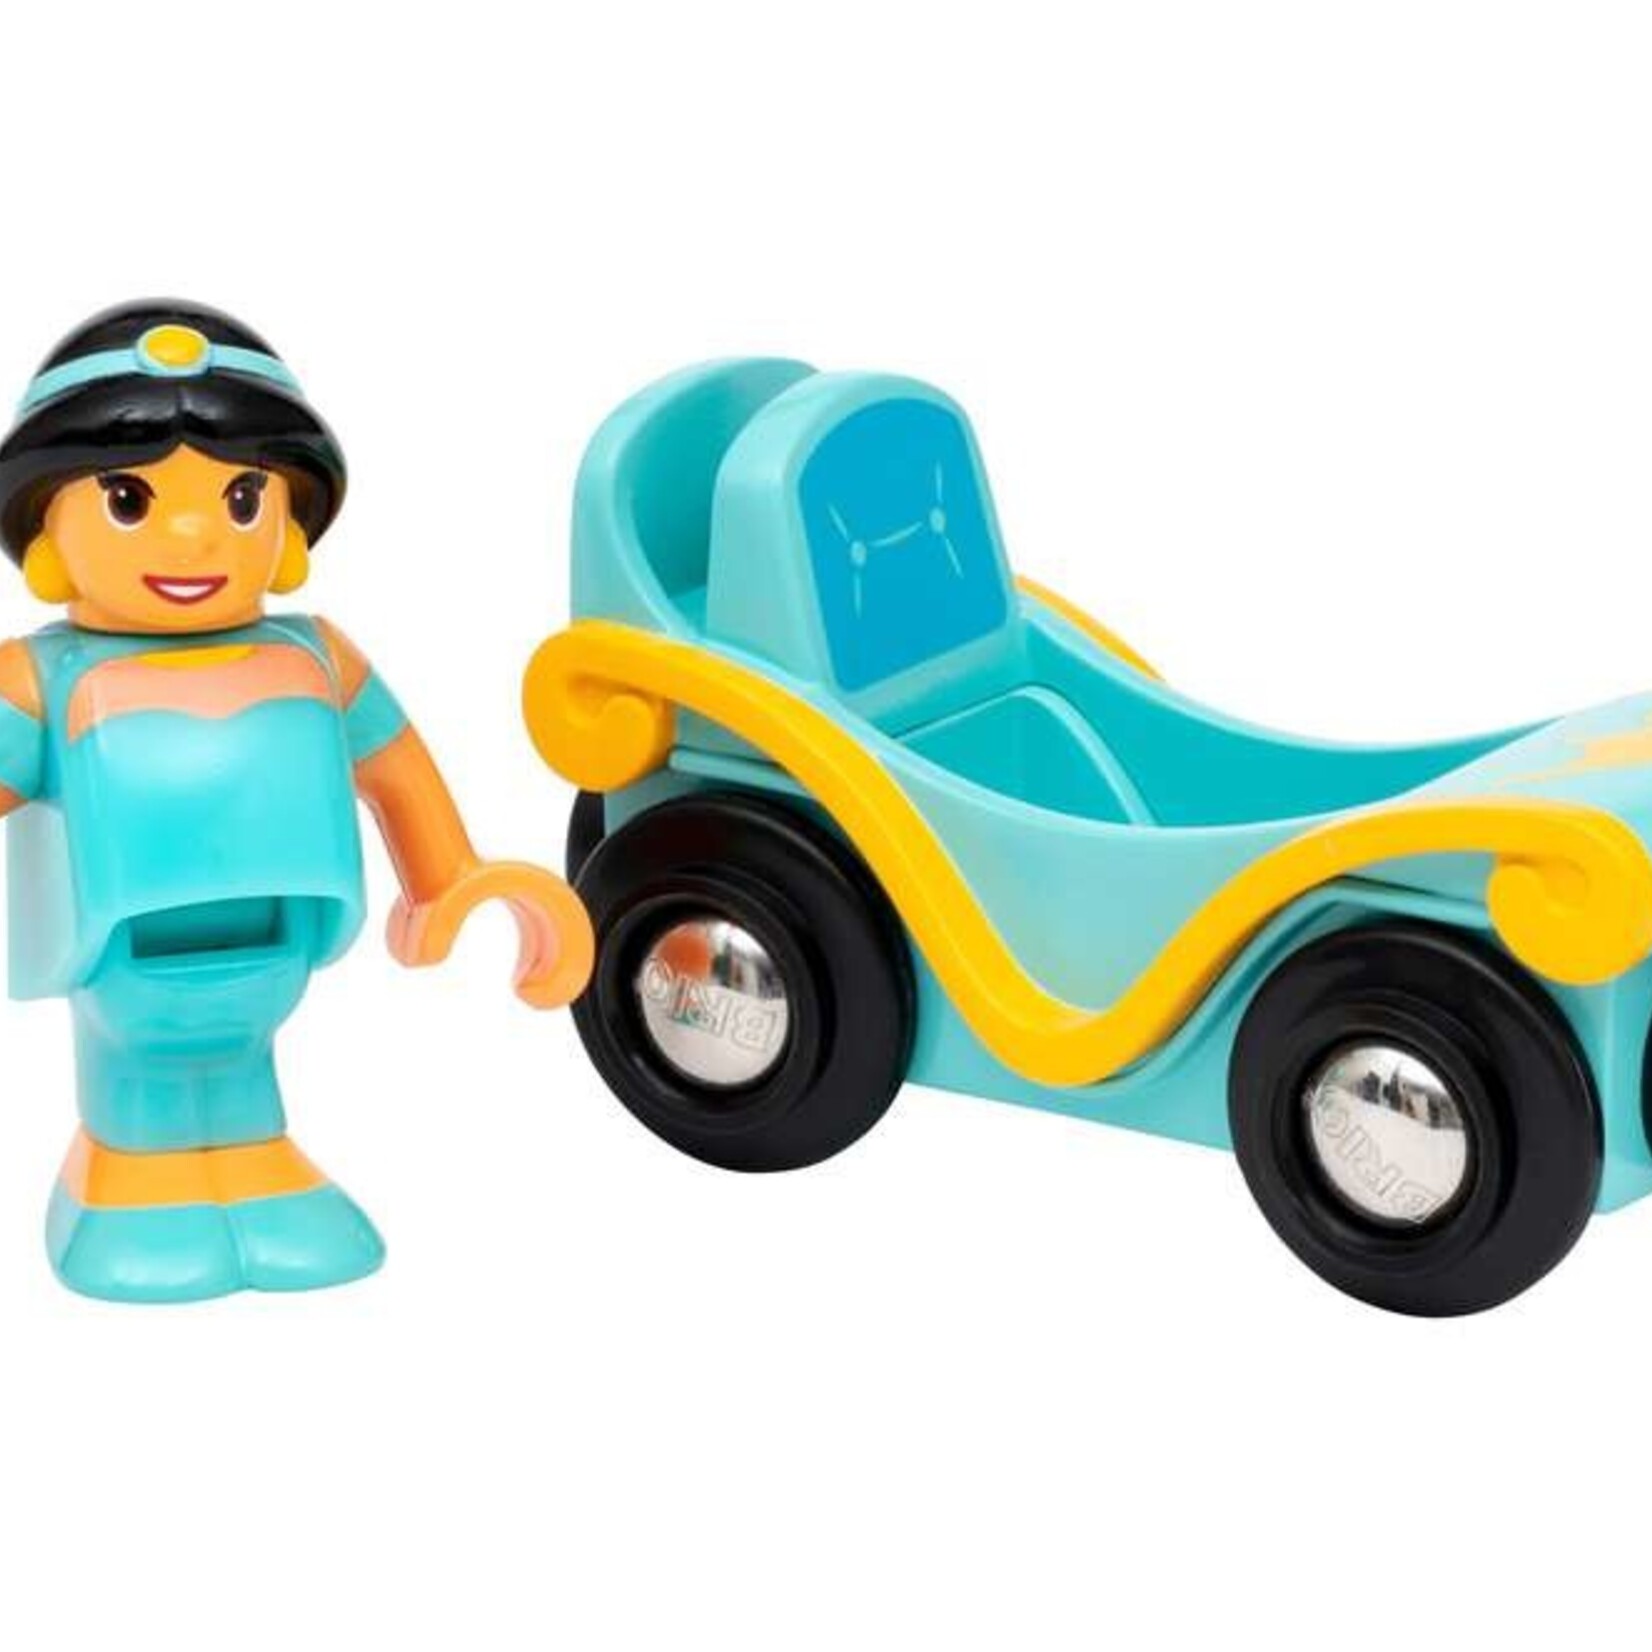 Brio Brio - Disney Princesses : Jasmine et son wagon